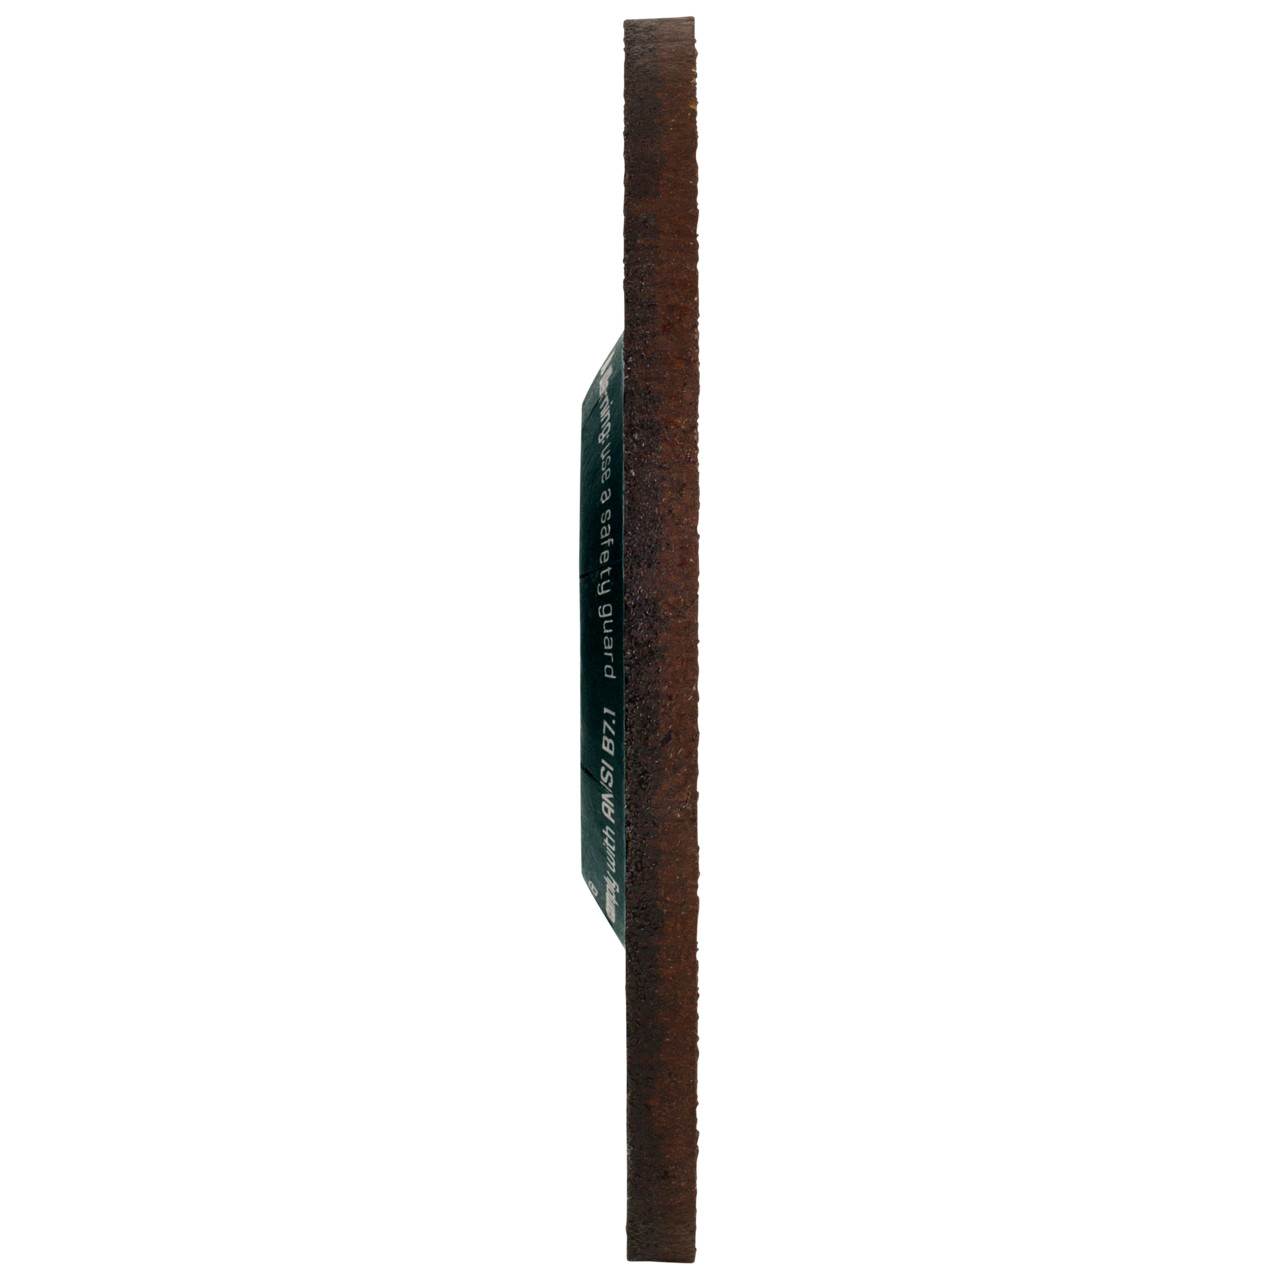 Tyrolit Voorslijpschijf DxUxH 230x7x22,23 CERABOND X voor staal en roestvast staal